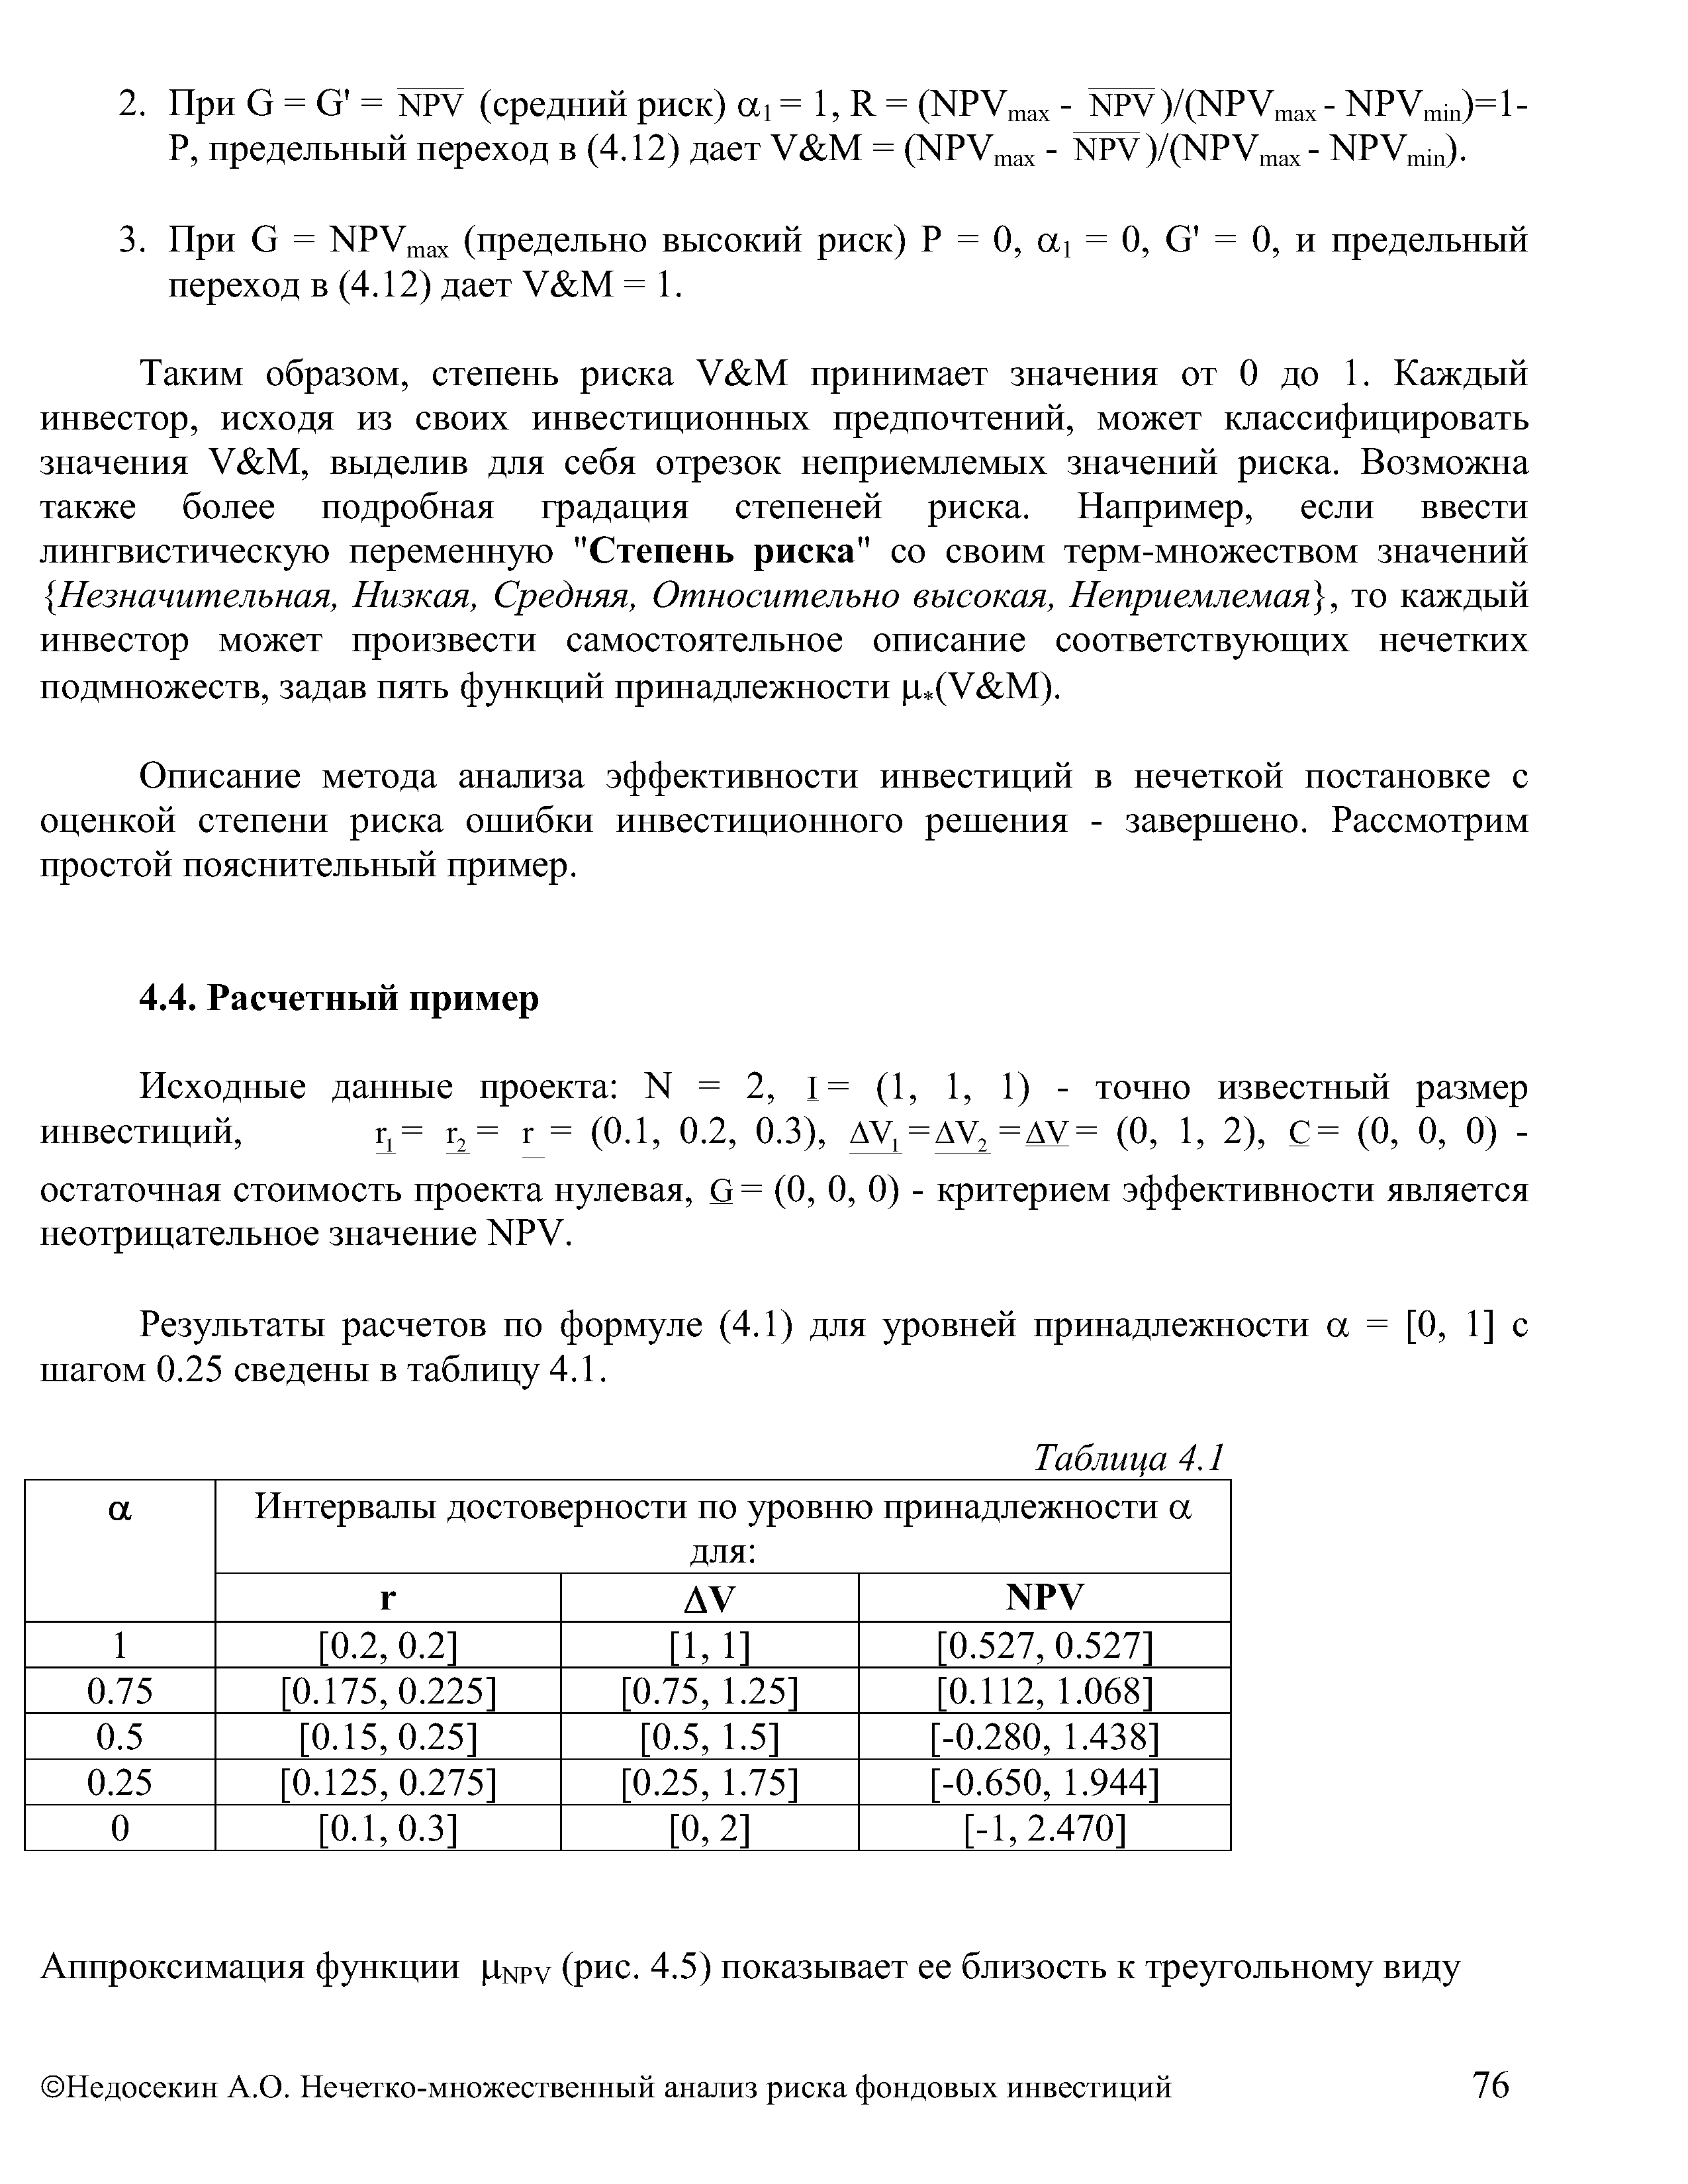 Результаты расчетов по формуле (4.1) для уровней принадлежности a = [О, 1] с шагом 0.25 сведены в таблицу 4.1.
